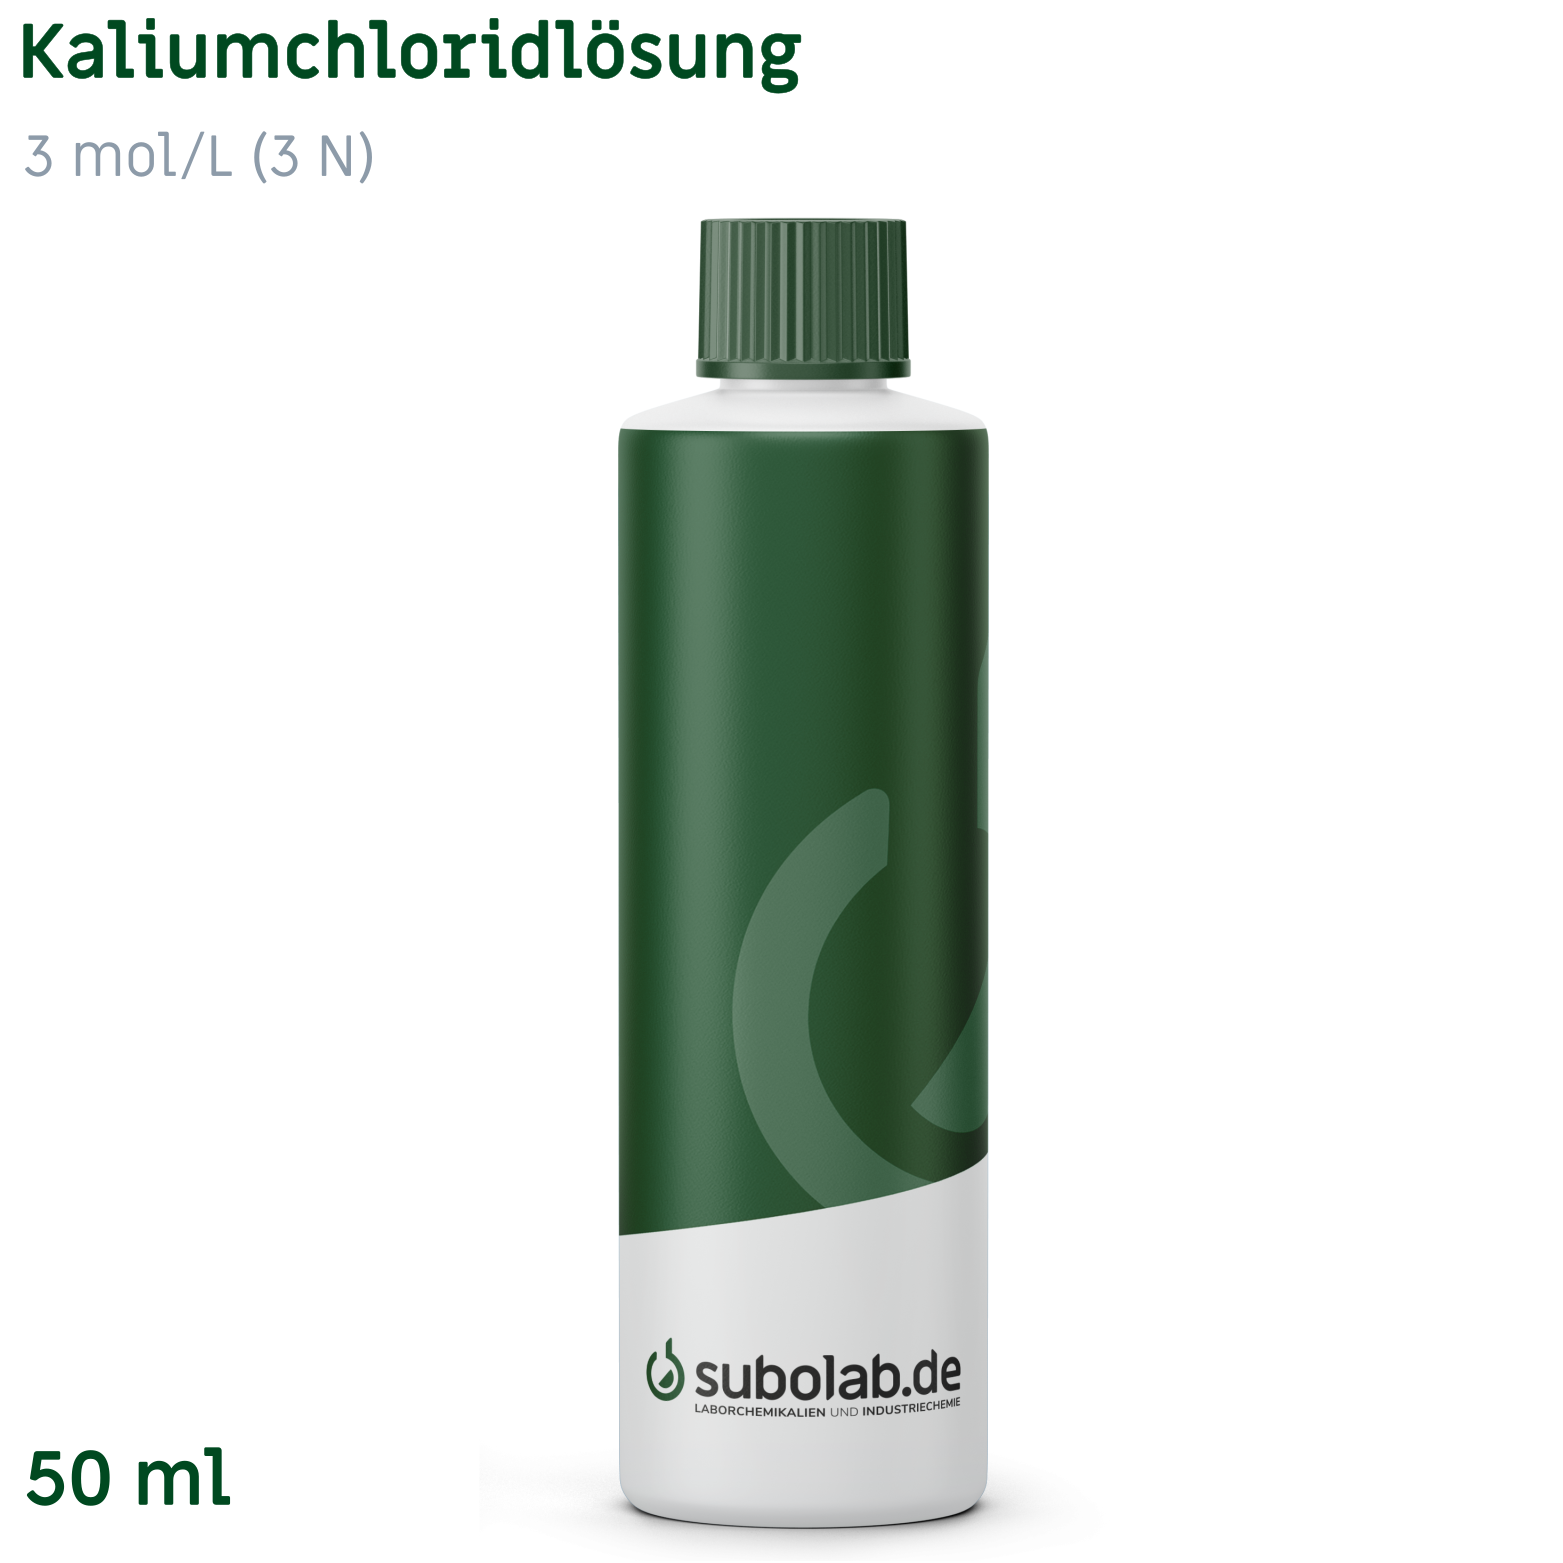 Bild von Kaliumchloridlösung 3 mol/L (3 N) (50 ml)